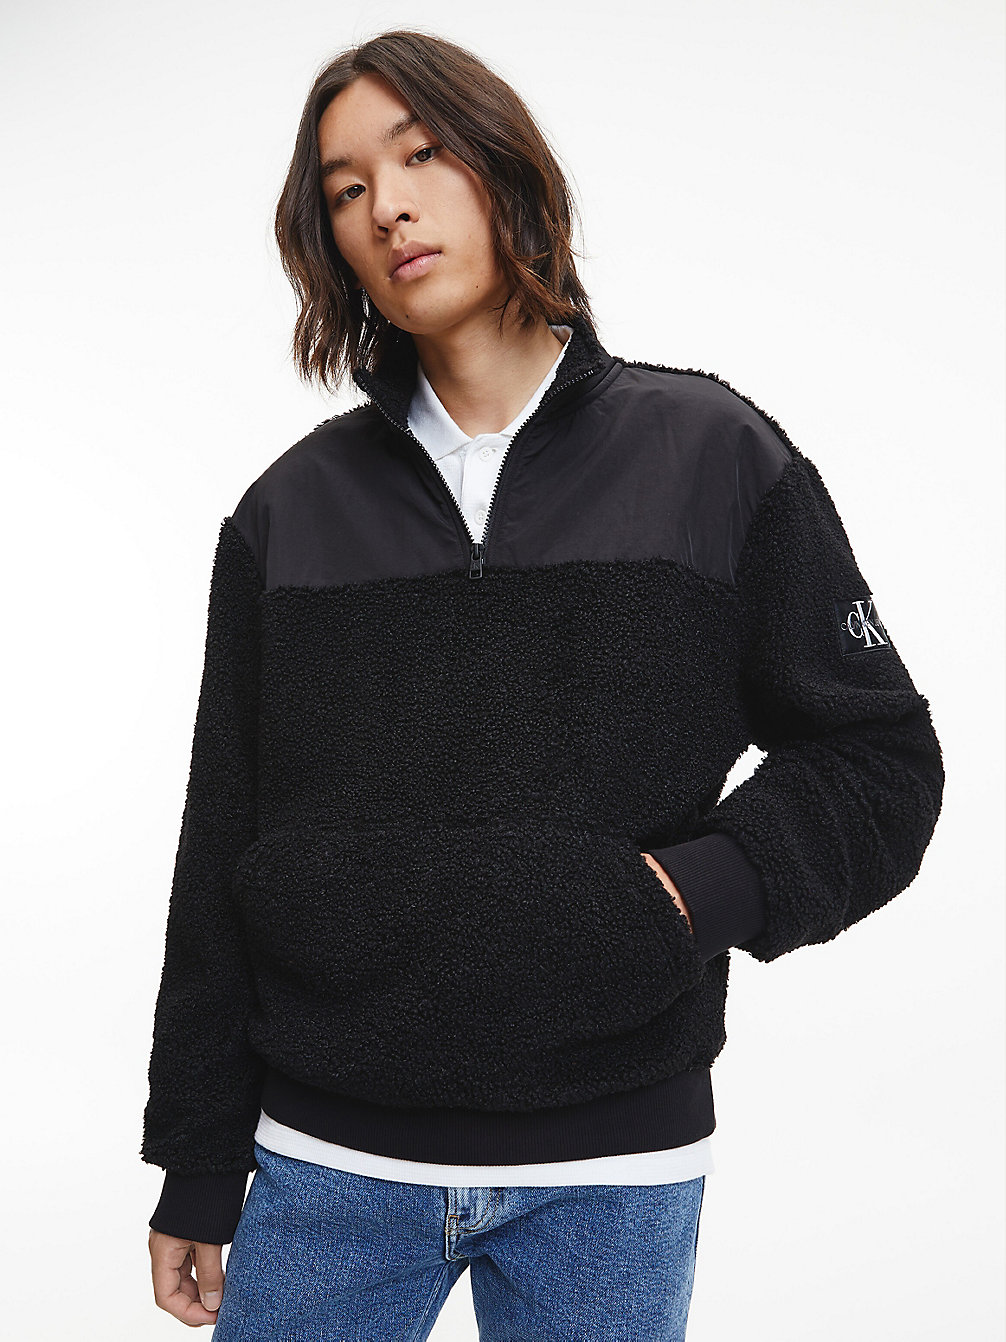 CK BLACK Relaxed Sherpa-Pullover Mit Reißverschlusskragen undefined Herren Calvin Klein